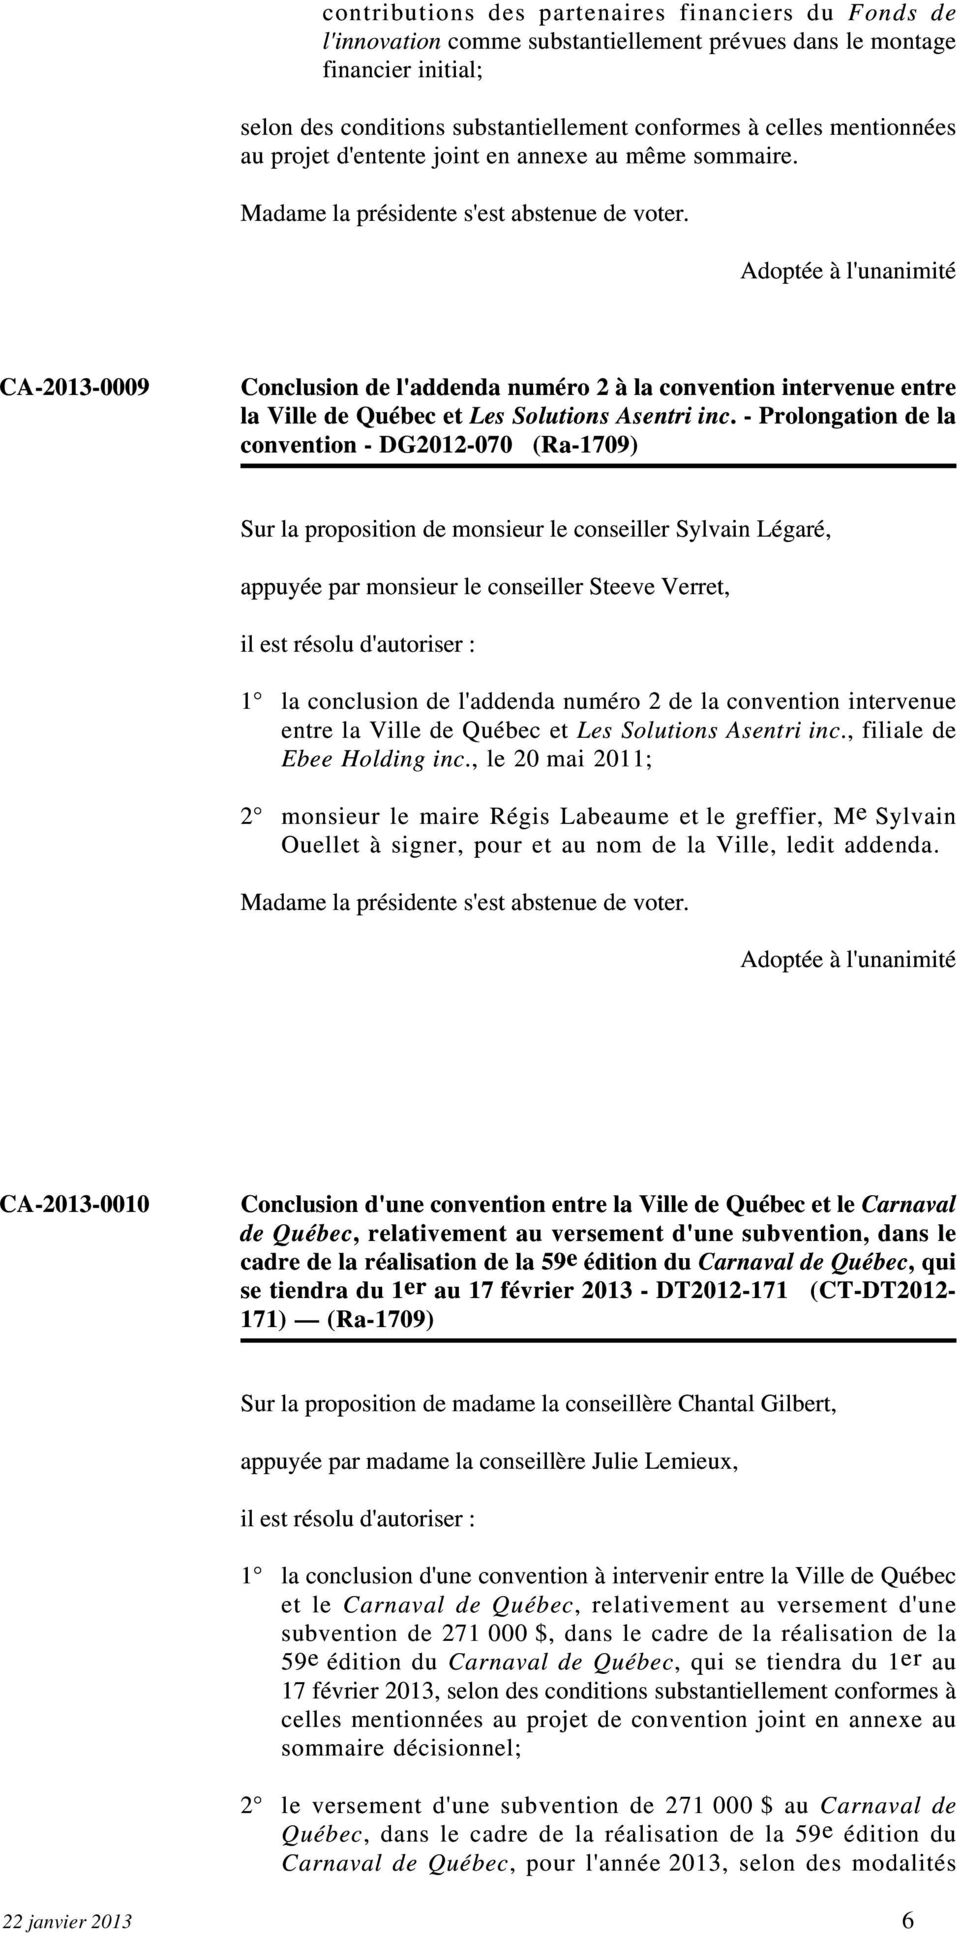 - Prolongation de la convention - DG2012-070 (Ra-1709) Sur la proposition de monsieur le conseiller Sylvain Légaré, appuyée par monsieur le conseiller Steeve Verret, il est résolu d'autoriser : la